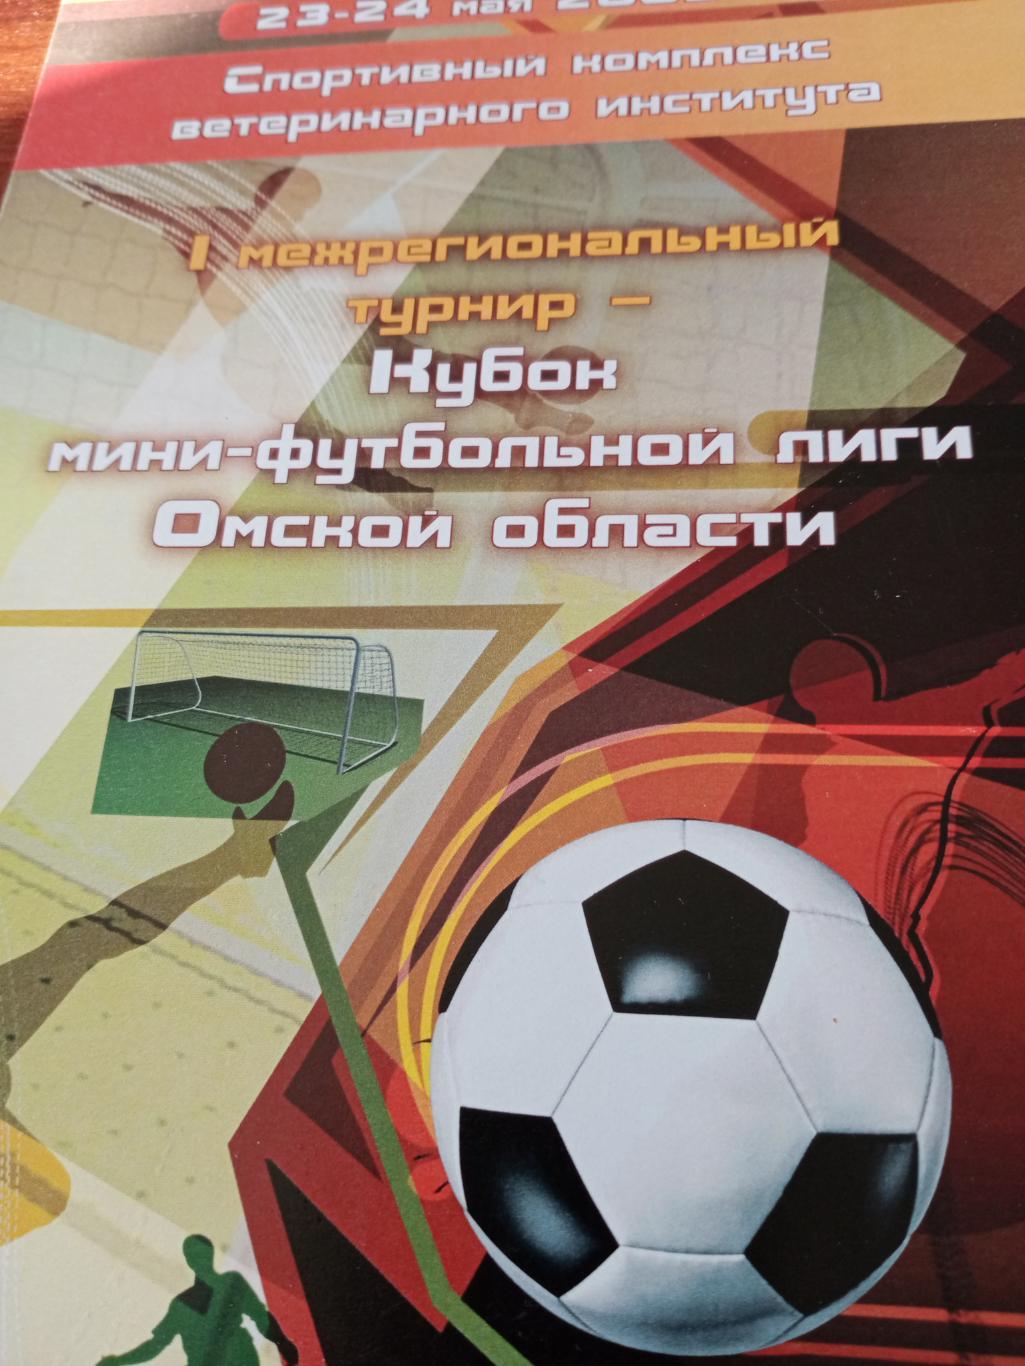 Кубок мини-футбольной лиги Омской области. 2009 г.